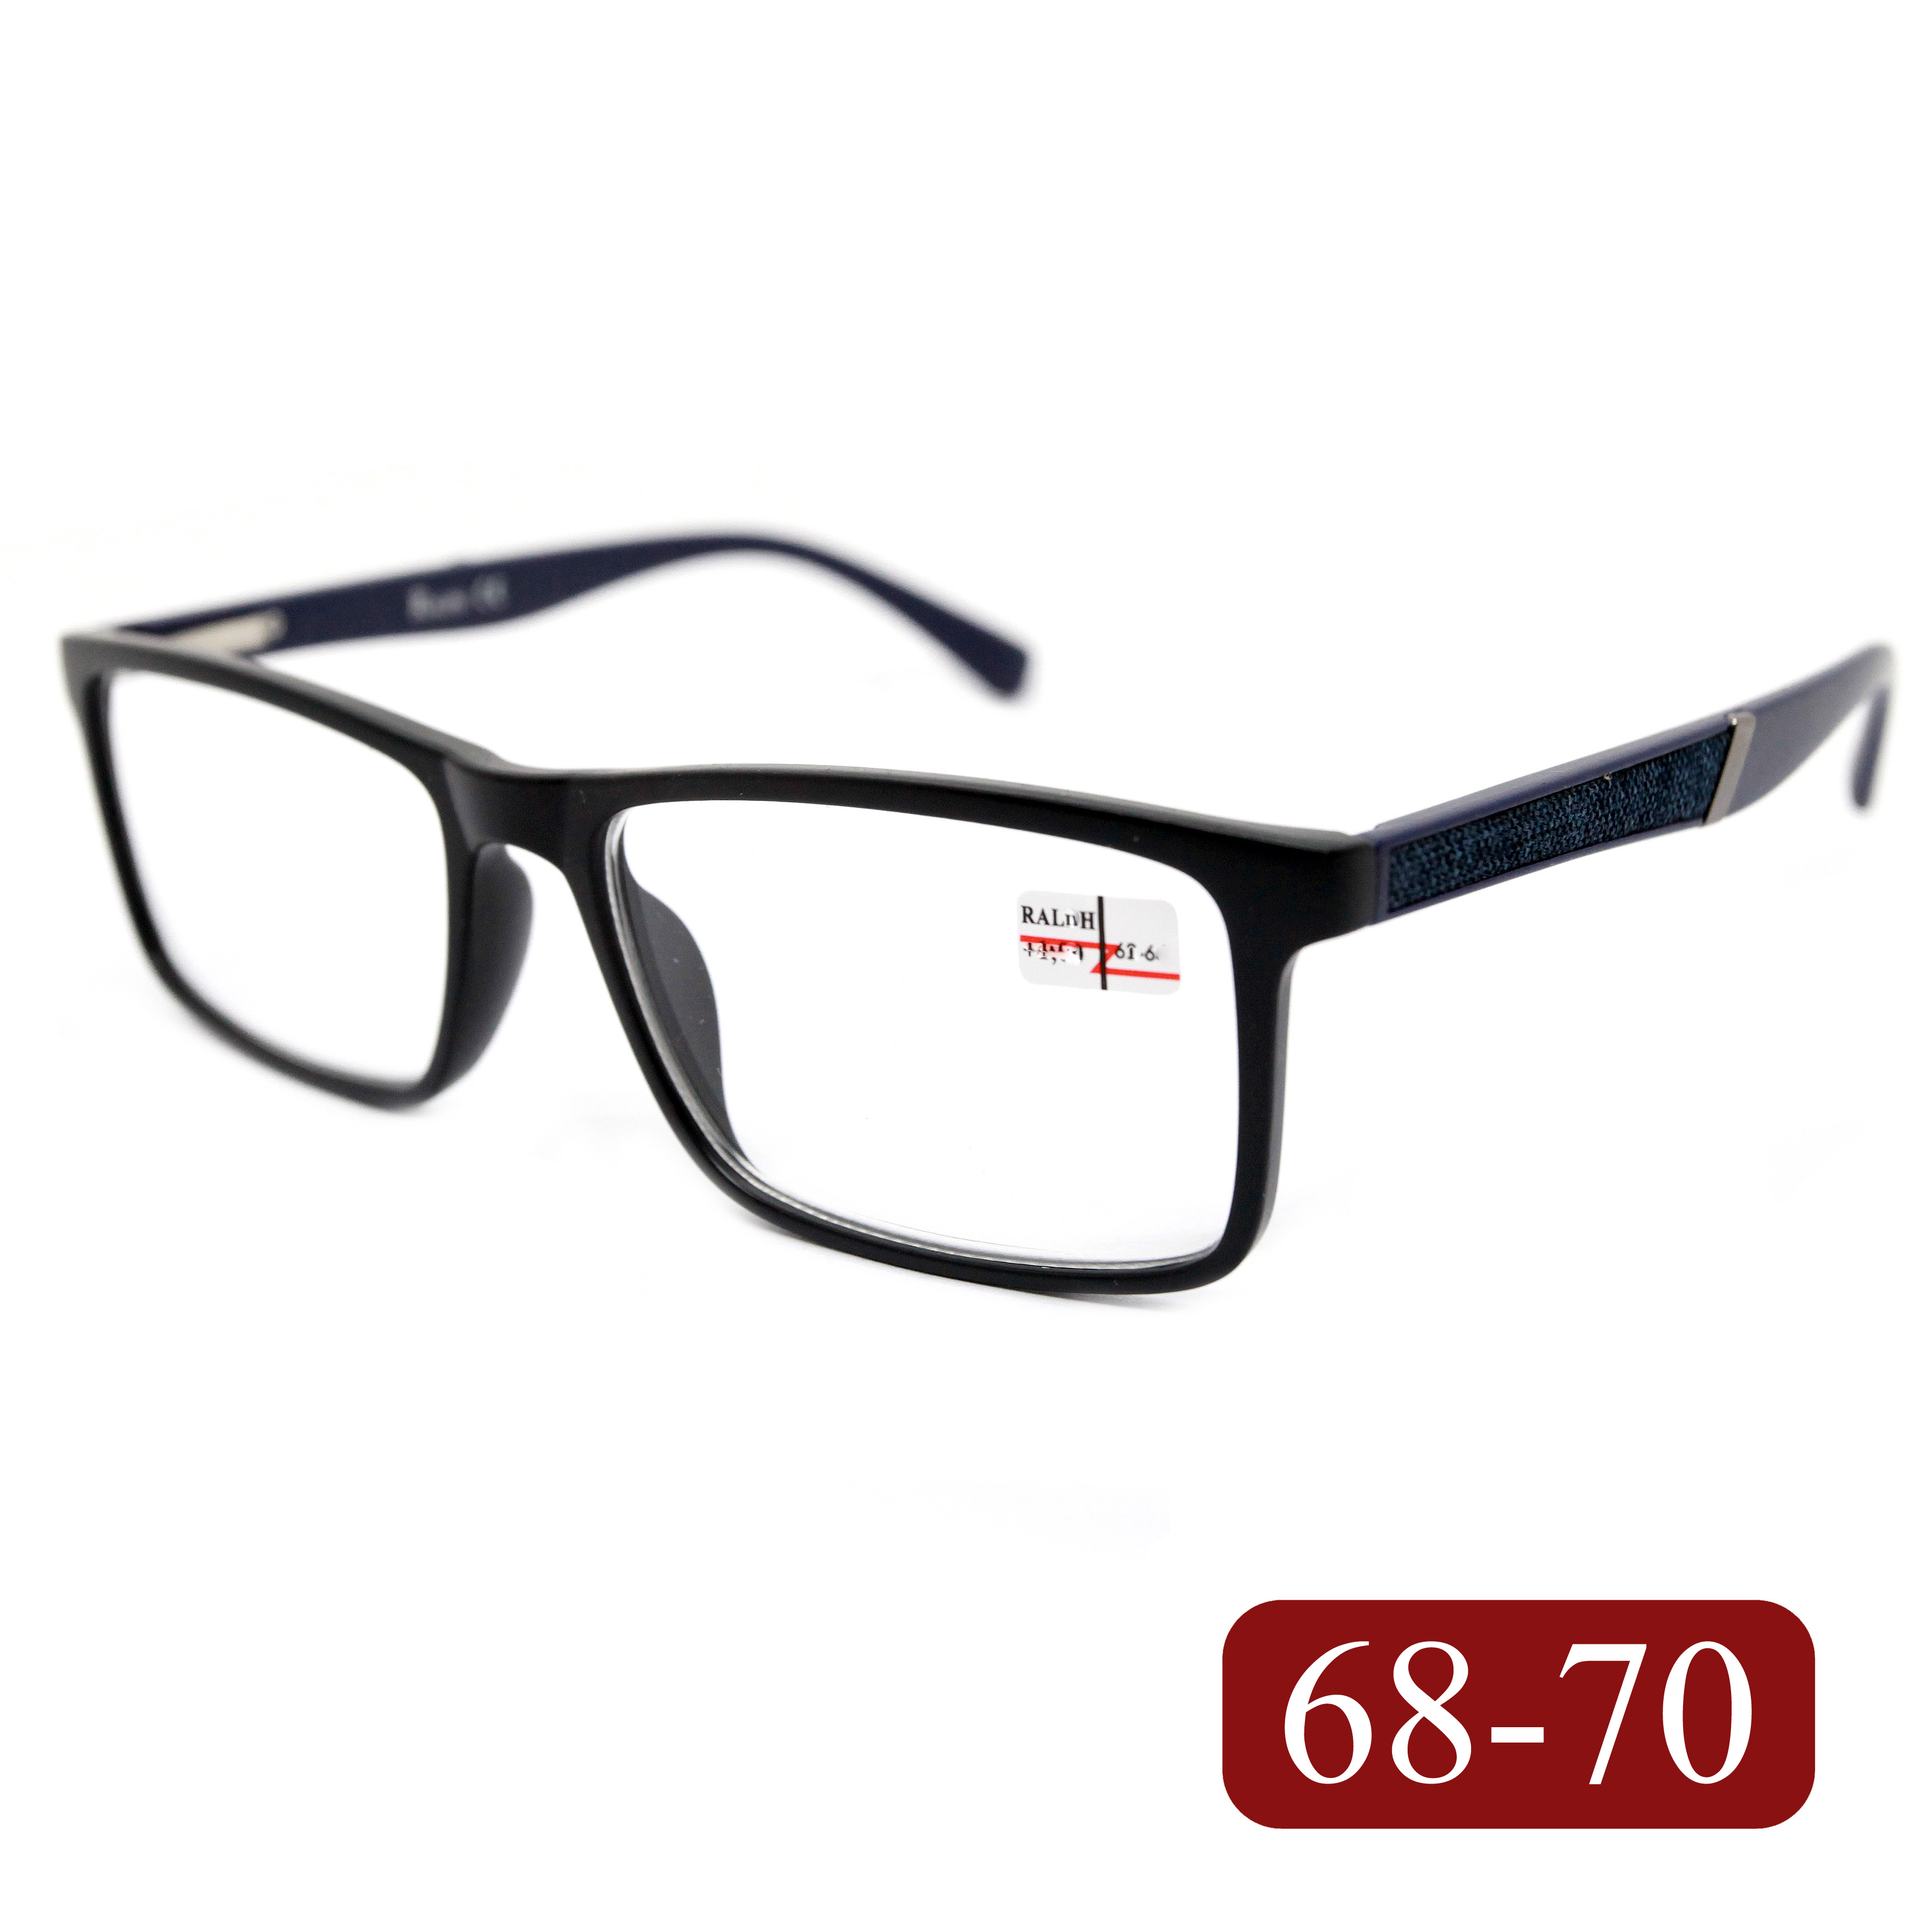 Готовые очки RALPH 0682 +6,00, без футляра, черно-синий, РЦ 68-70